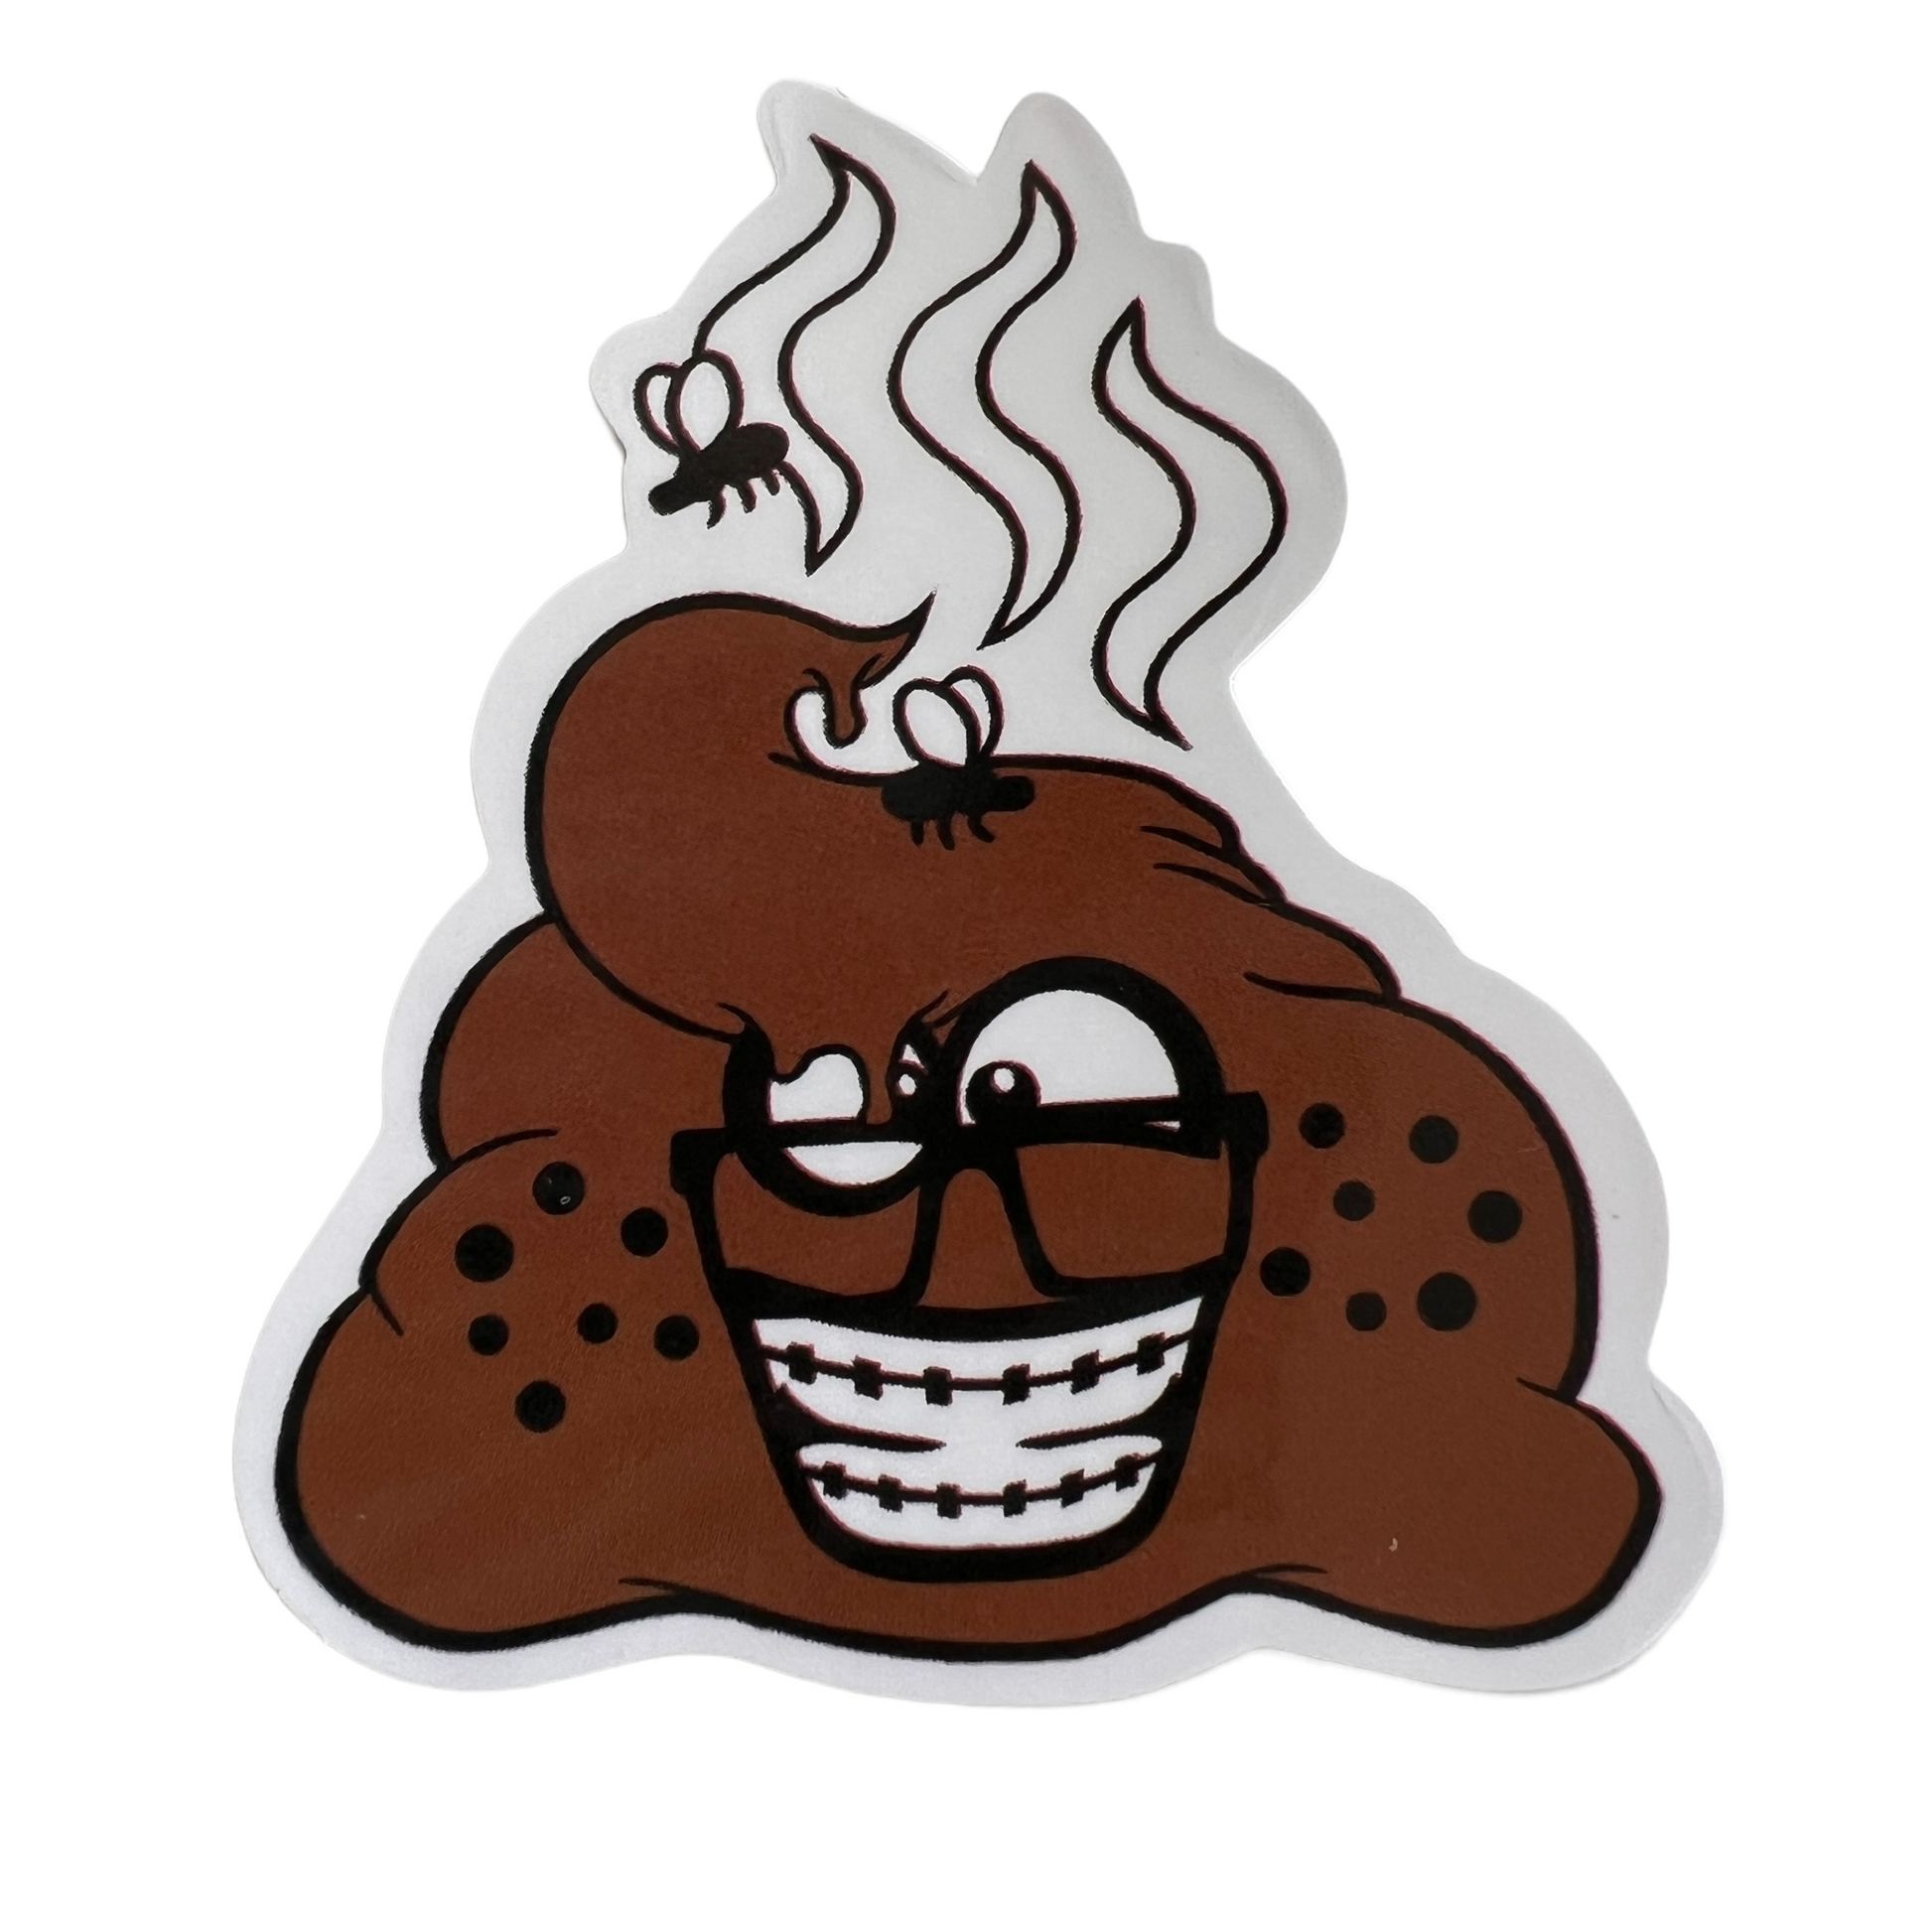 Poop Emoji Stickers Decorative Stickers SPIRIT SPARKPLUGS   